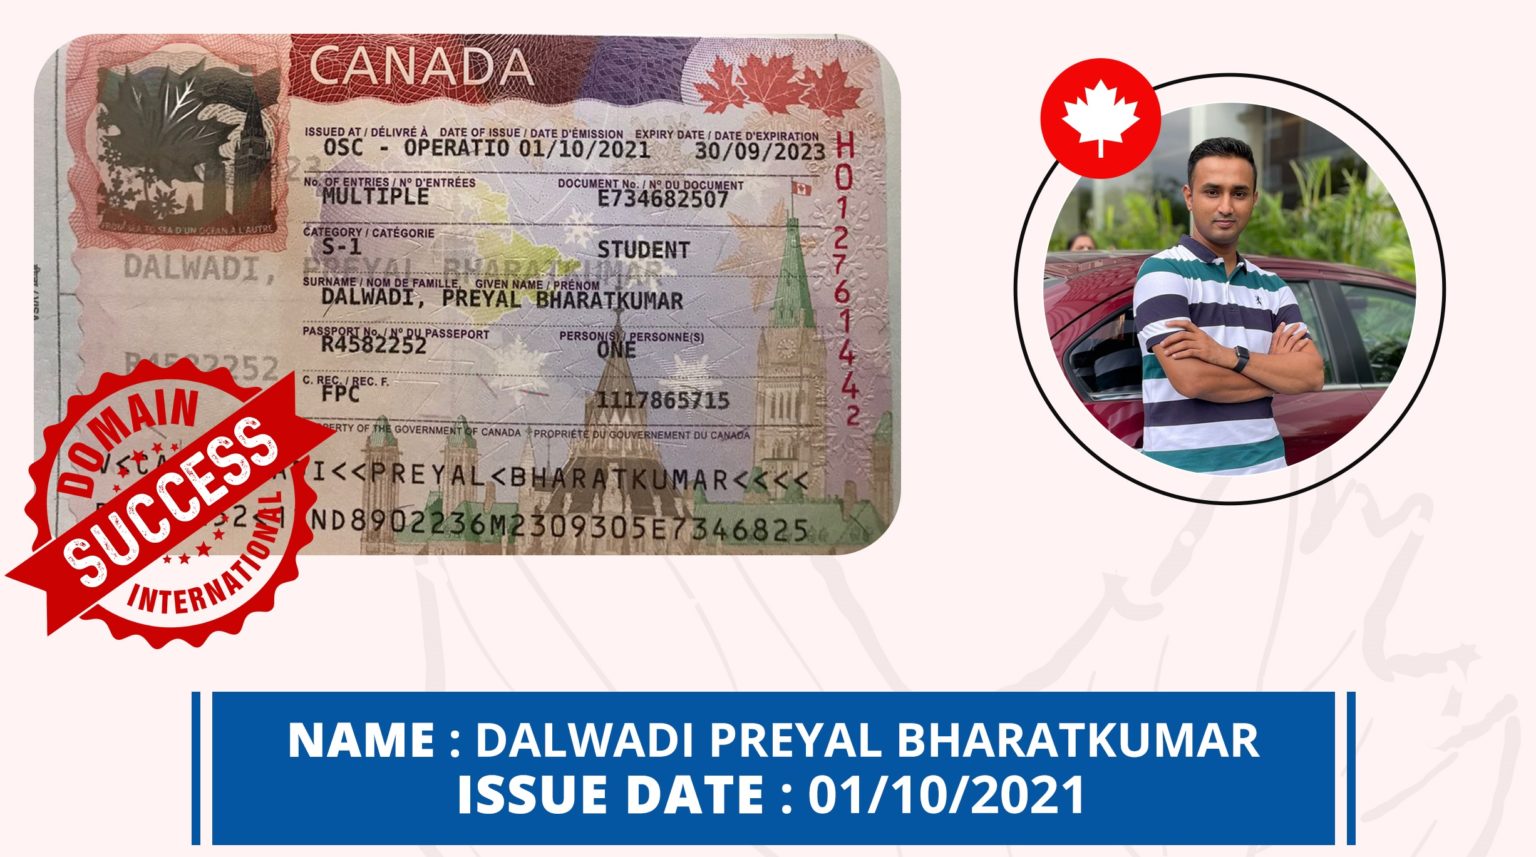 Canada-Visa-12-1536x857 (1)